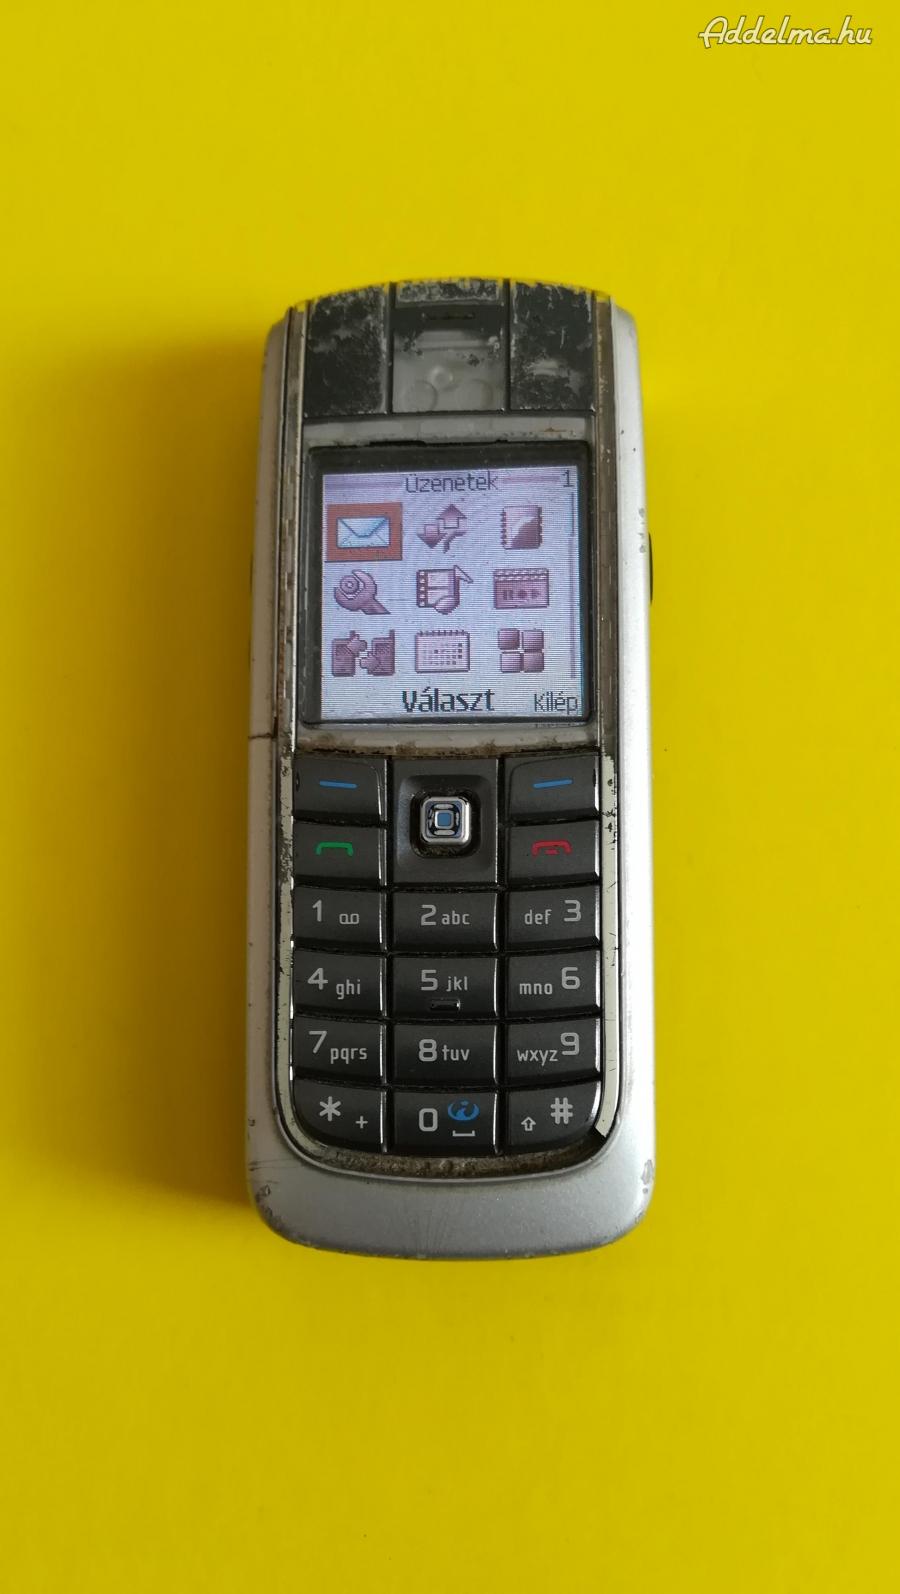 Nokia  6020 mobil  működőképes , telenoros.